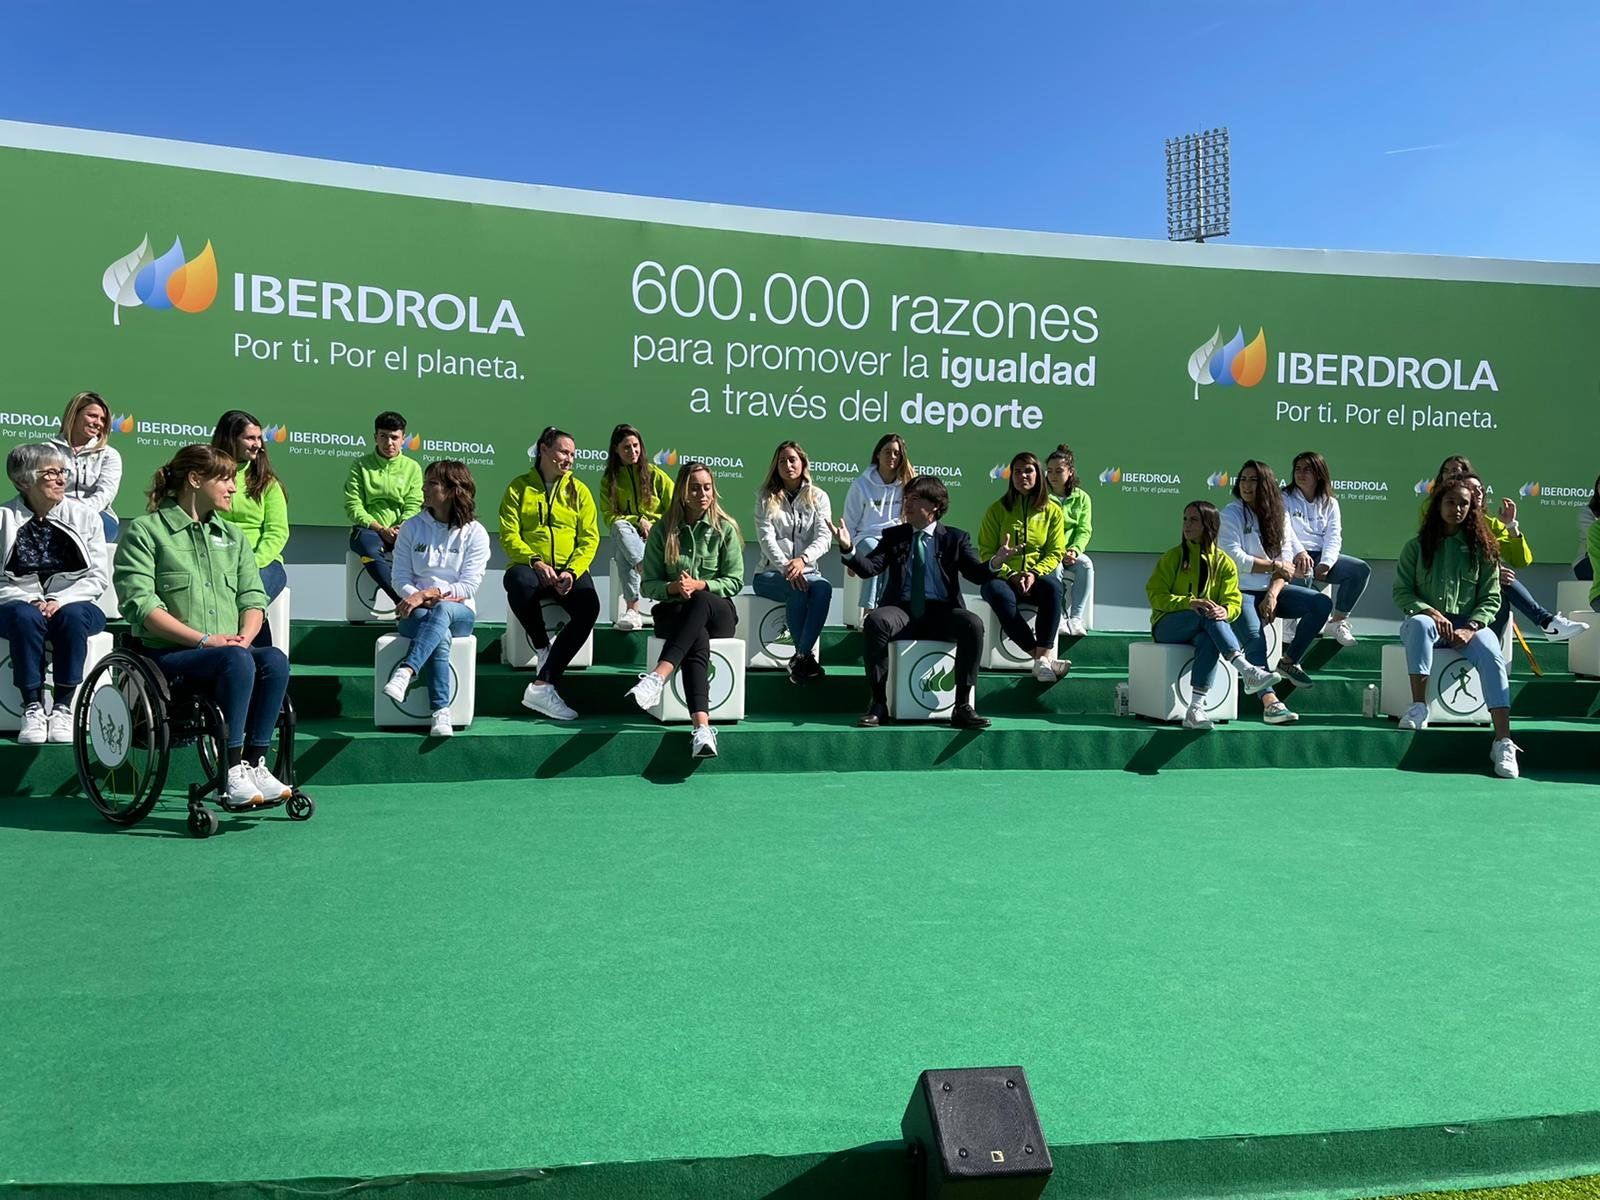 Evento de Iberdrola en Madrid